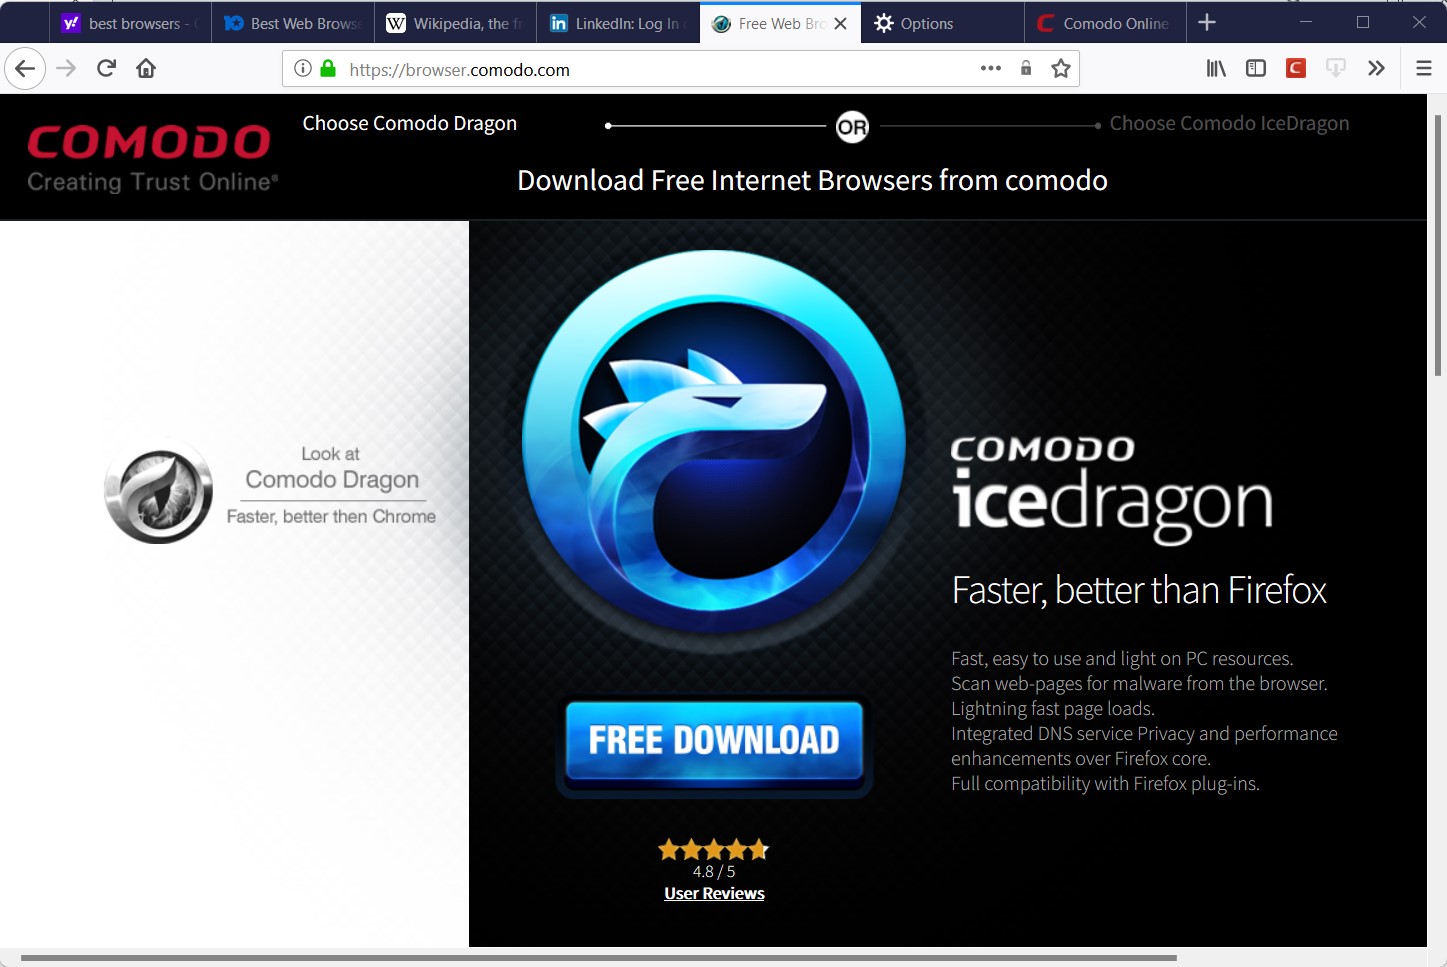 screenshot icedragon browser browser.comodo.com